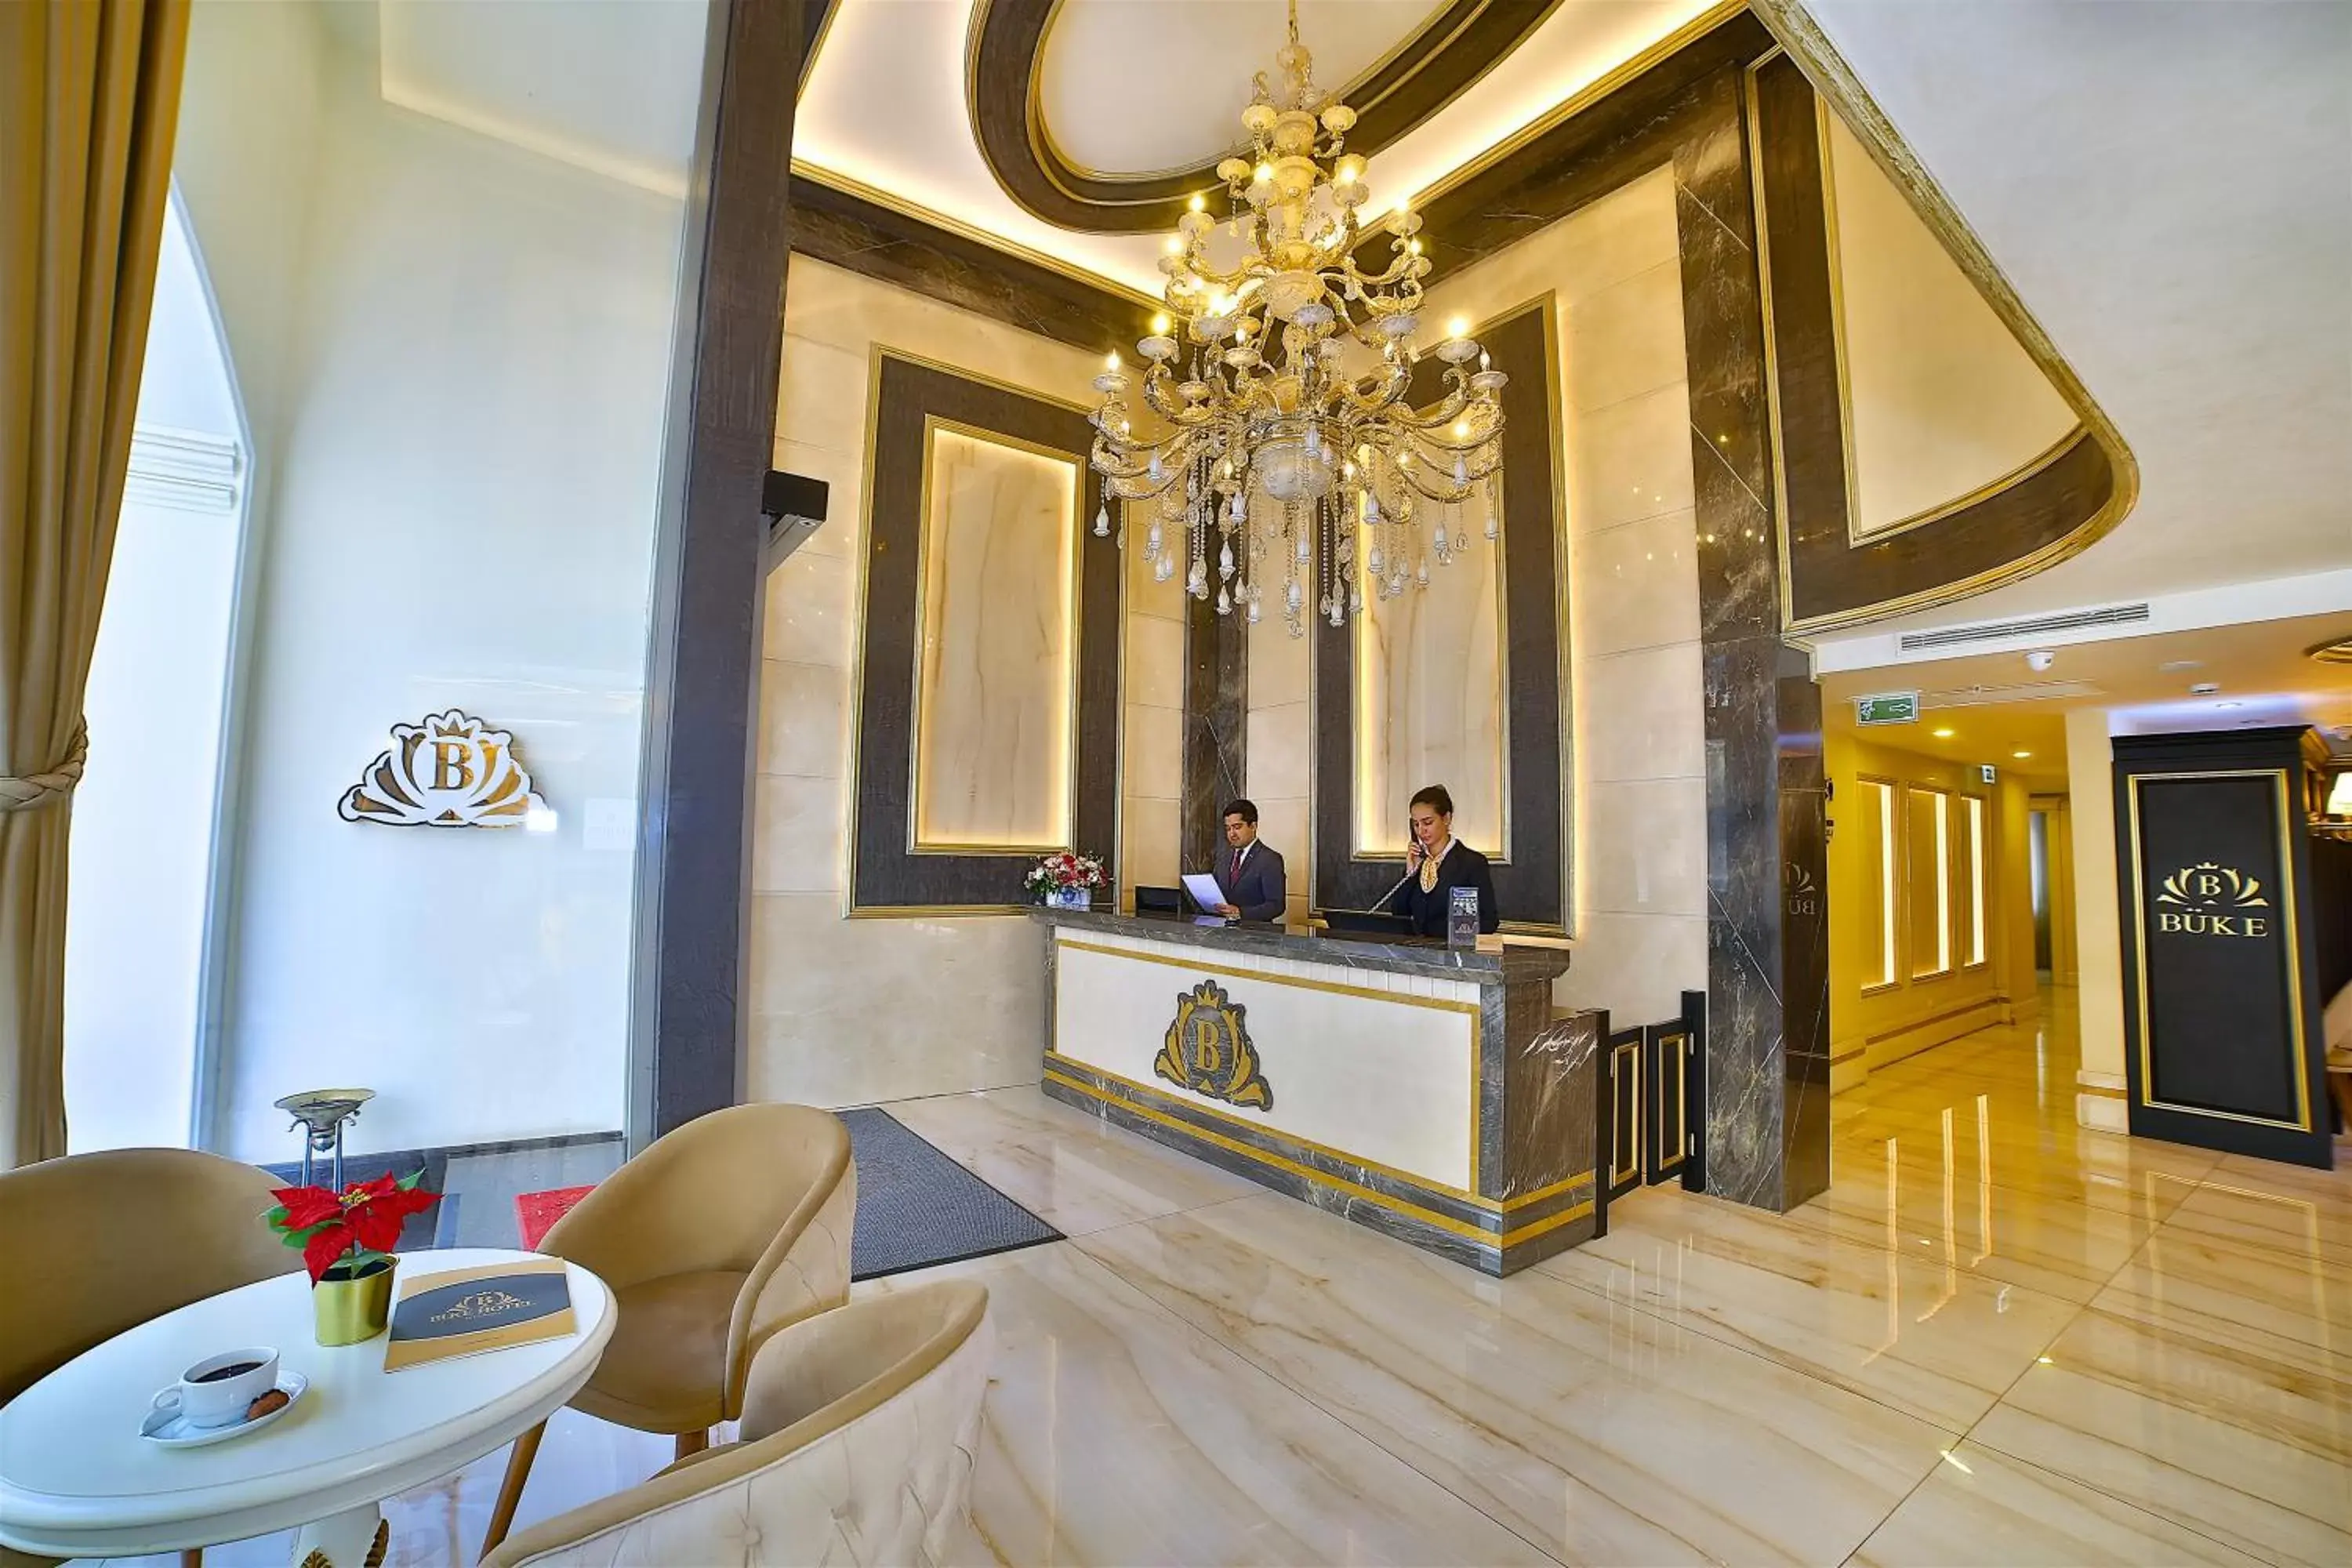 Lobby or reception in Büke Hotel